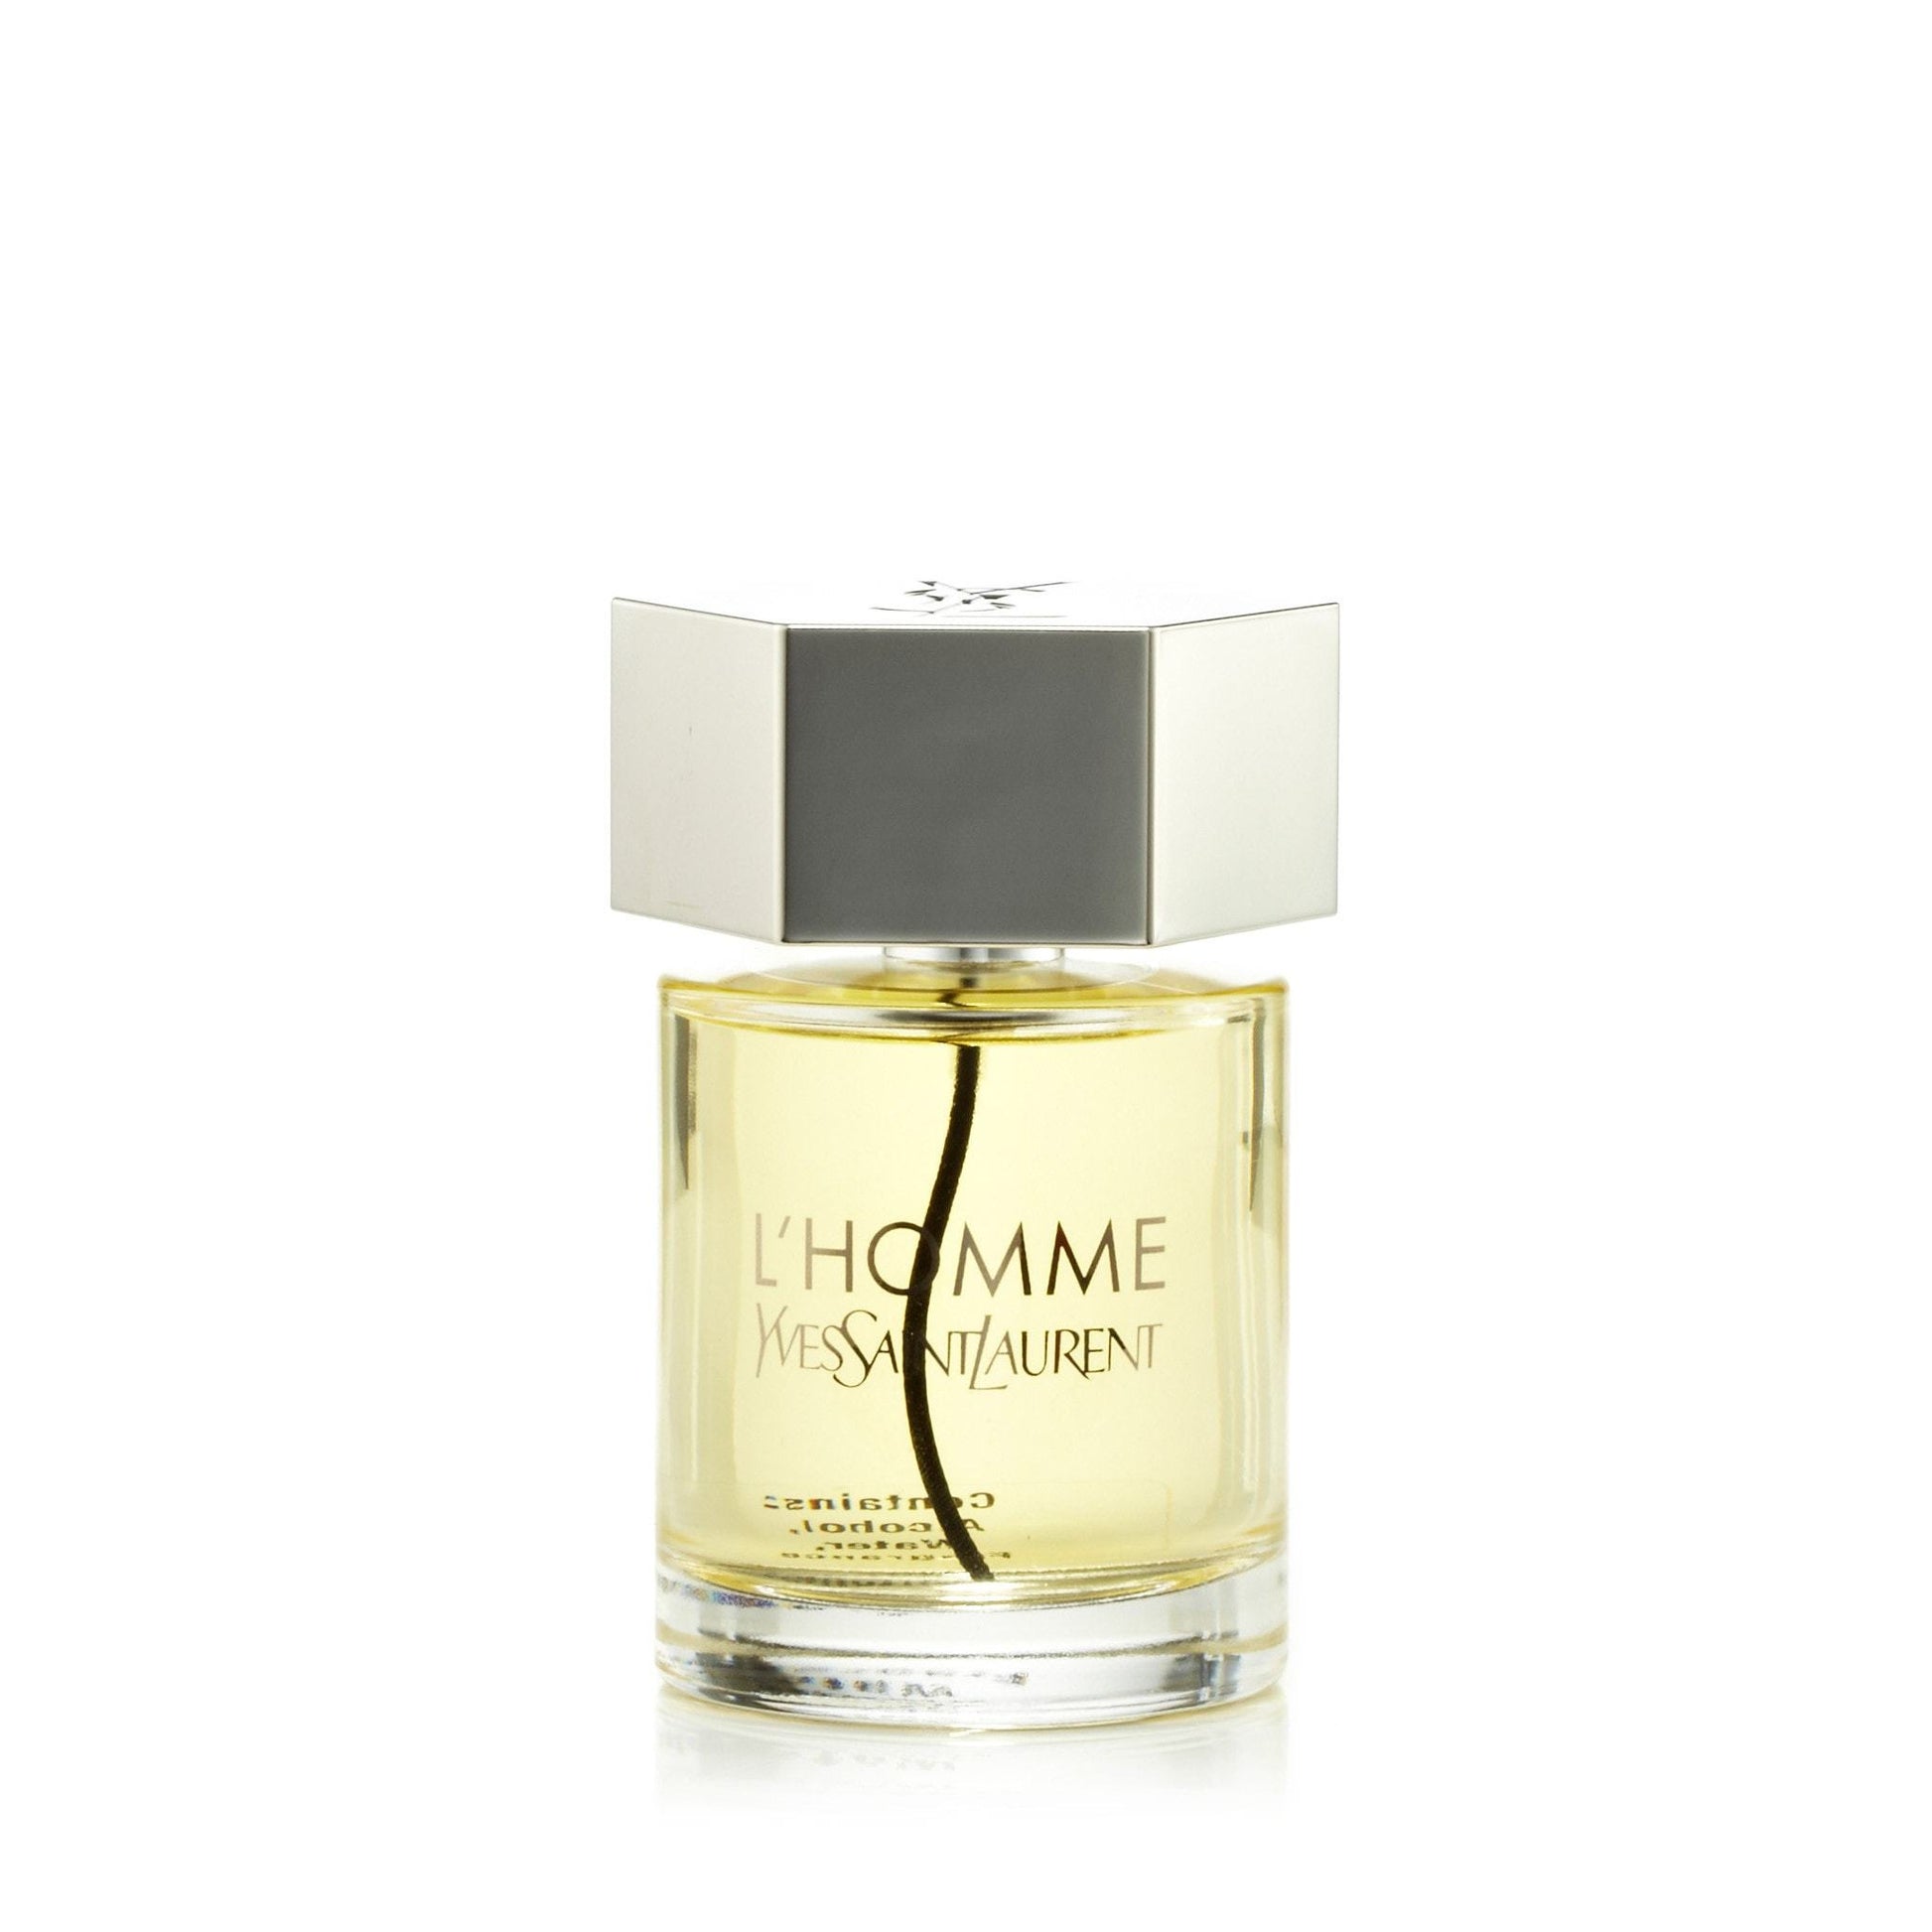 Yves Saint Laurent Men's Perfume for sale